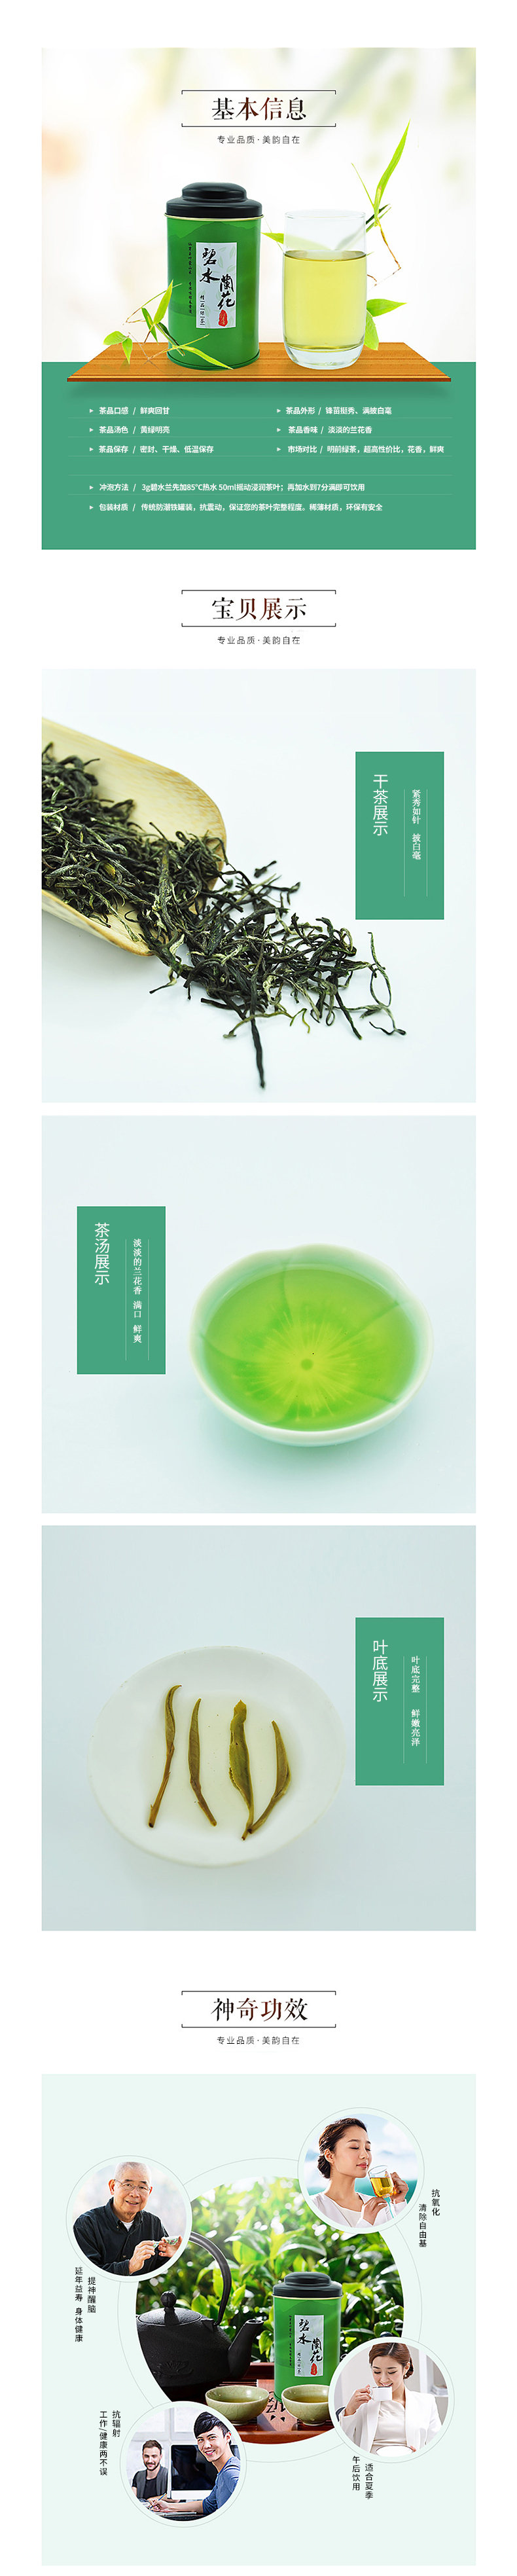 淘宝美工月华临摹绿茶 2017年新茶叶 特级明前绿茶作品